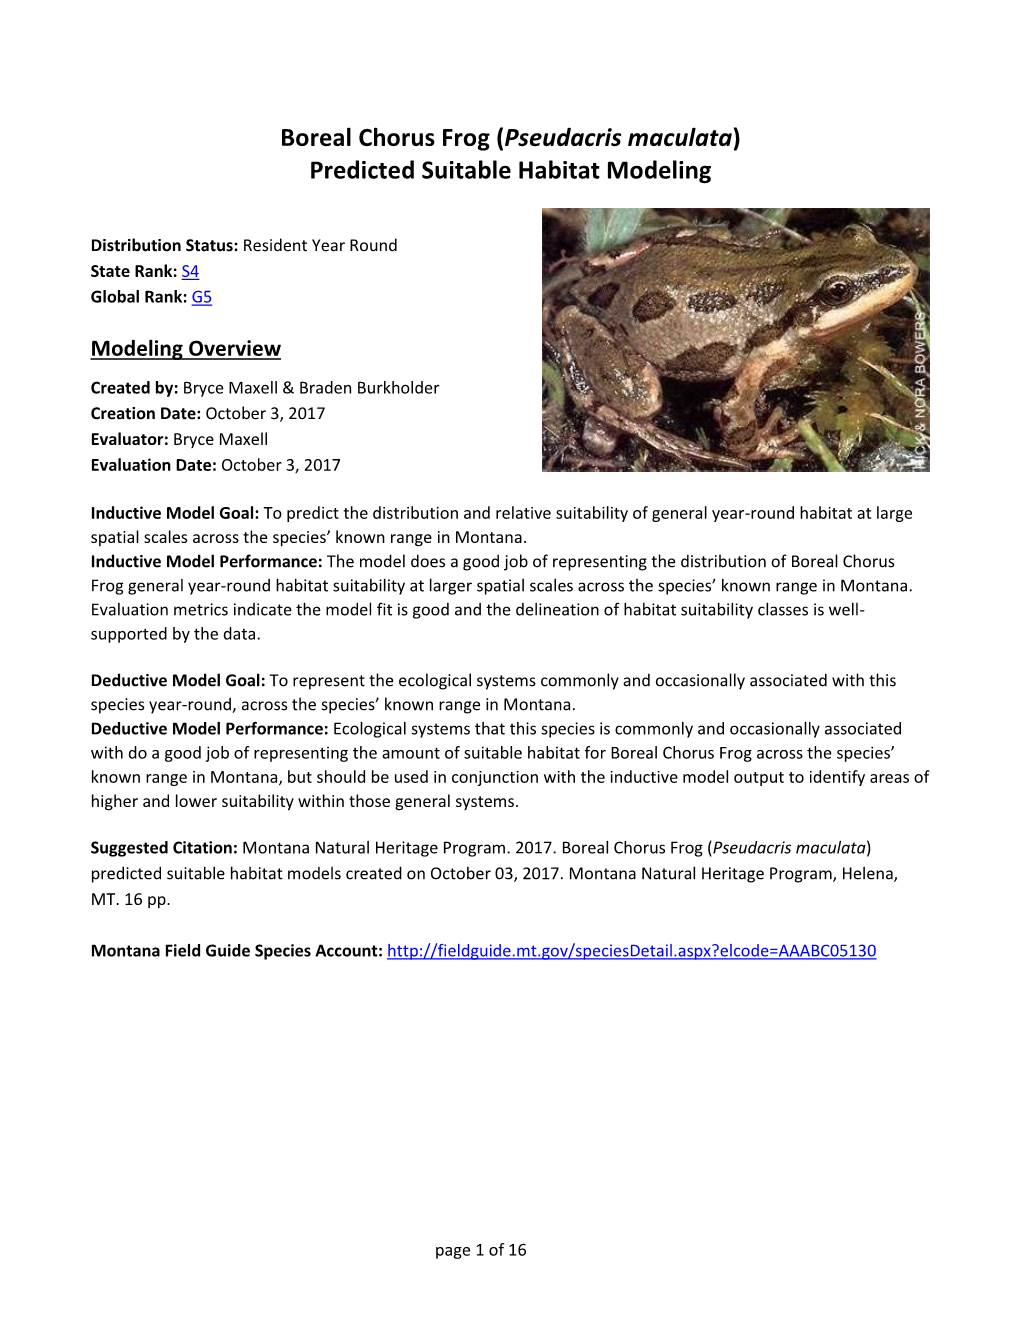 Boreal Chorus Frog (Pseudacris Maculata) Predicted Suitable Habitat Modeling